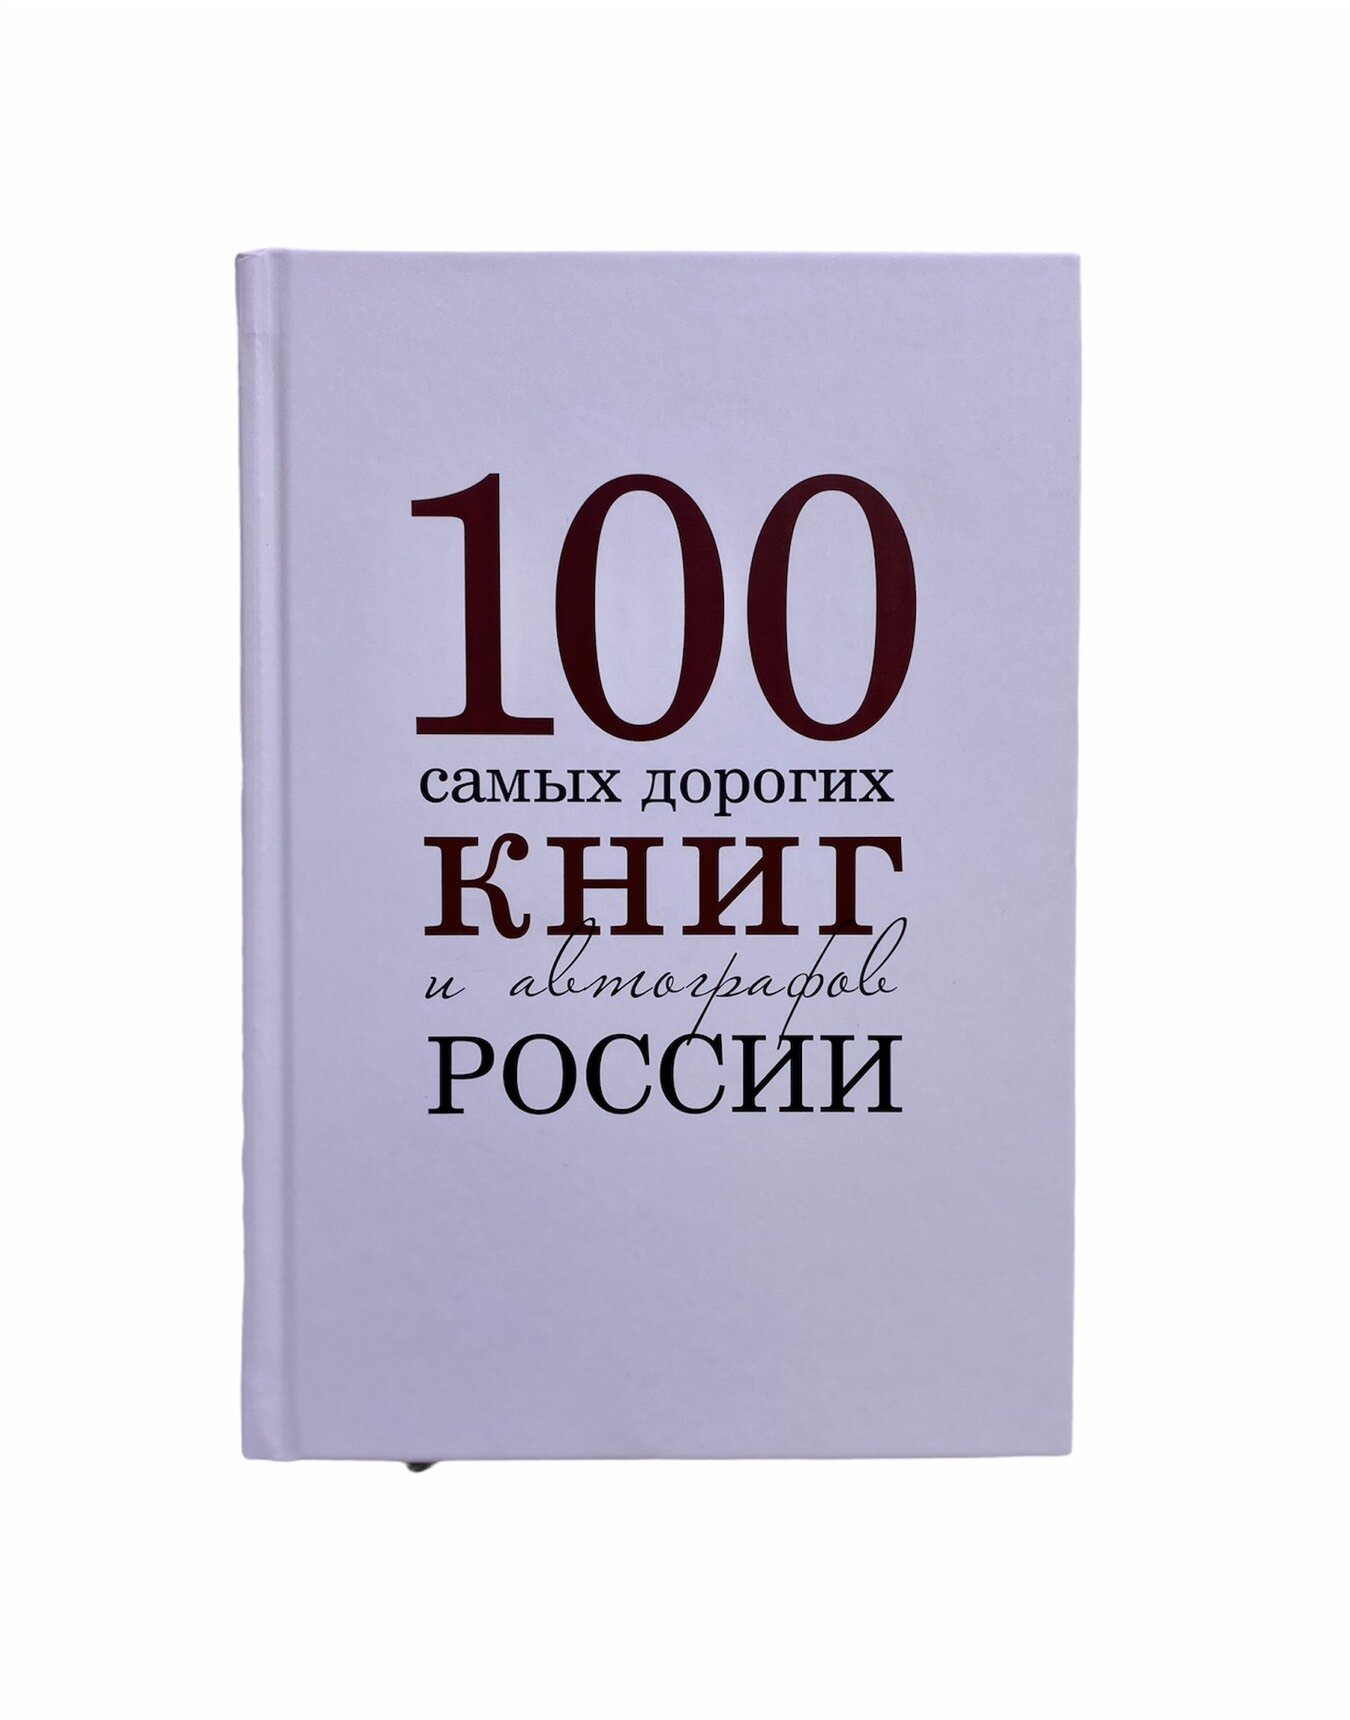 100 самых дорогих книг и автографов России - фото №3